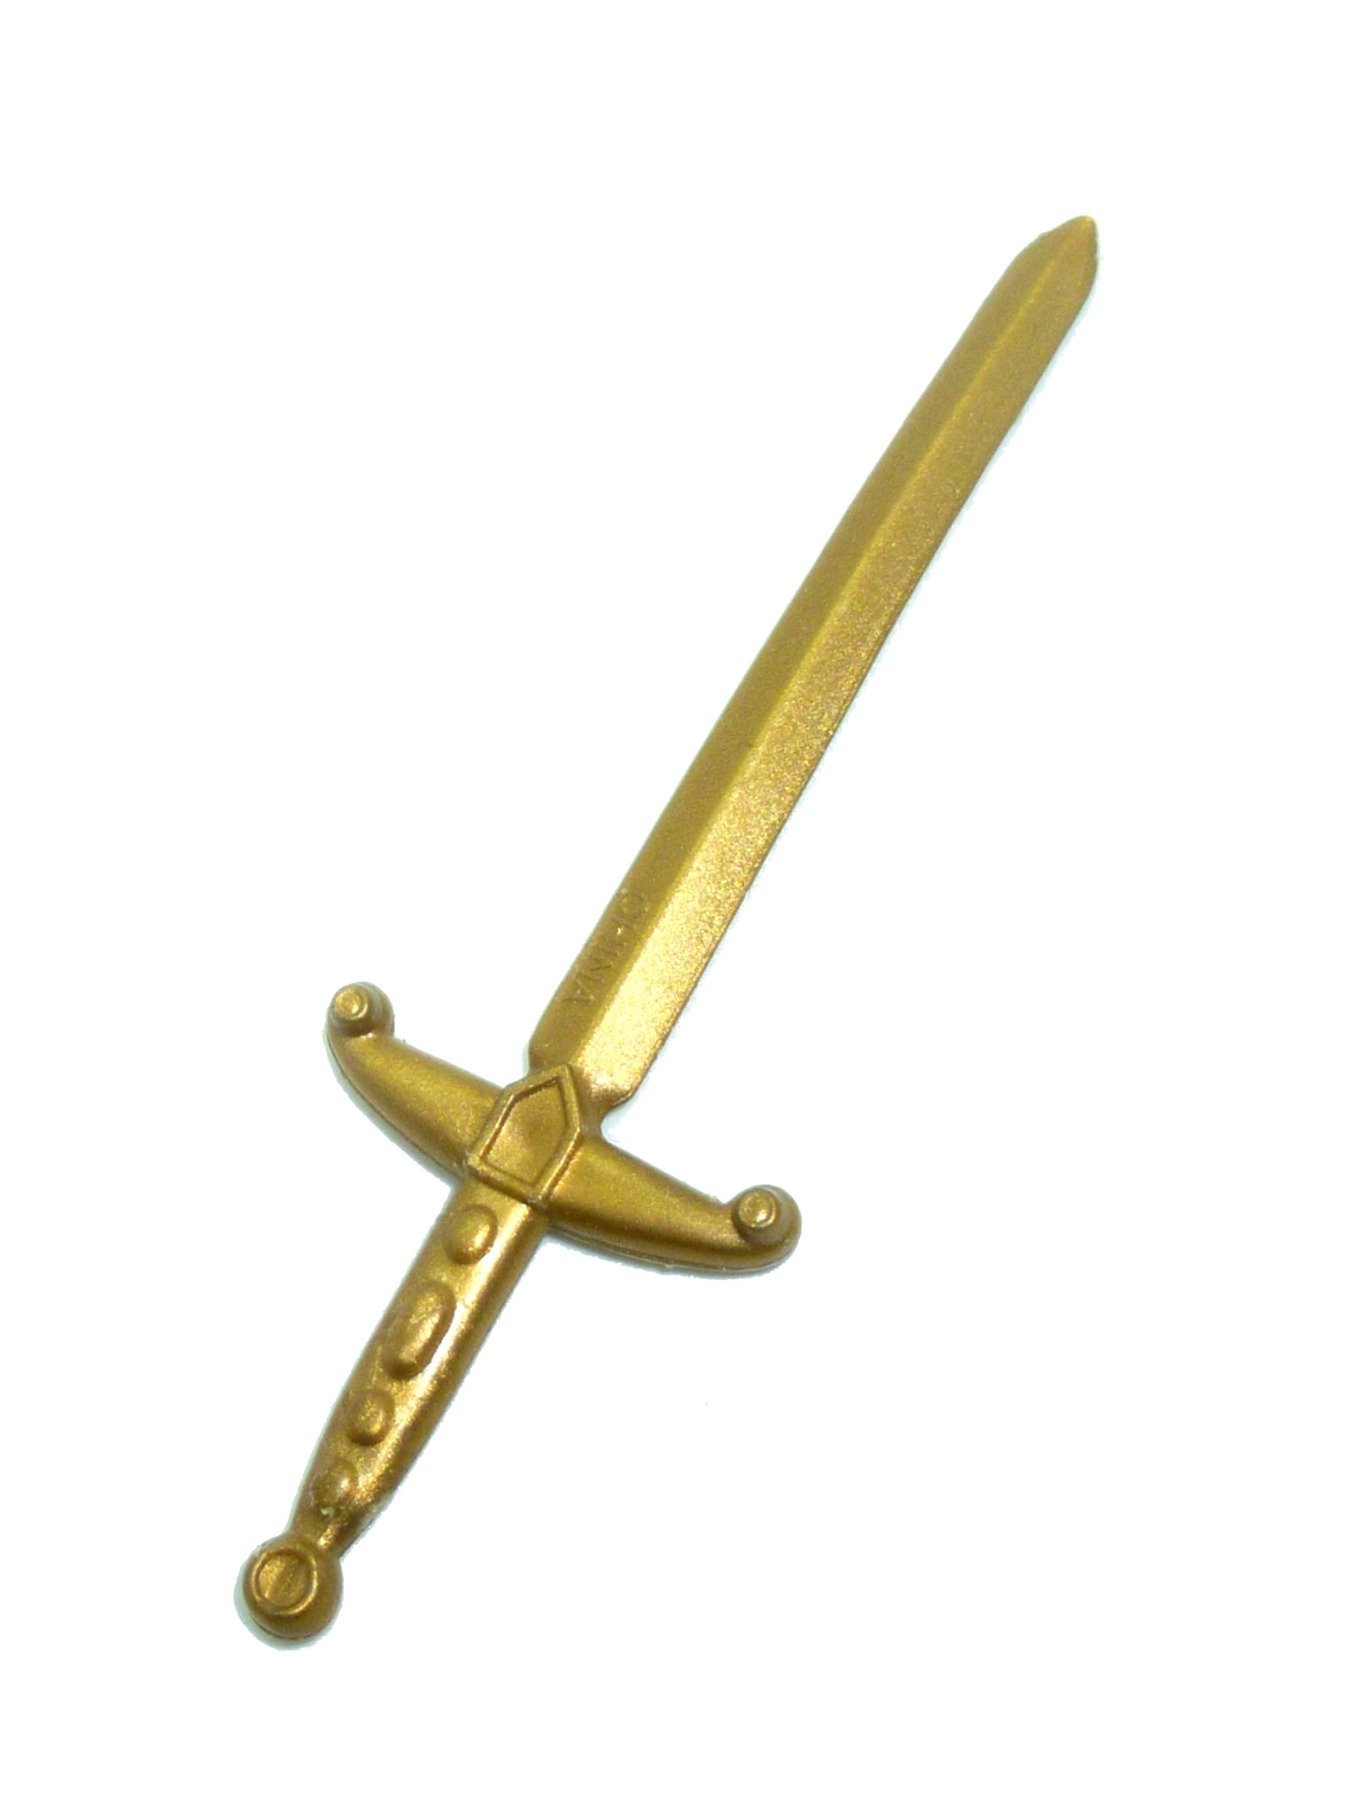 John Ratcliffe golden sword / weapon Mattel 1995